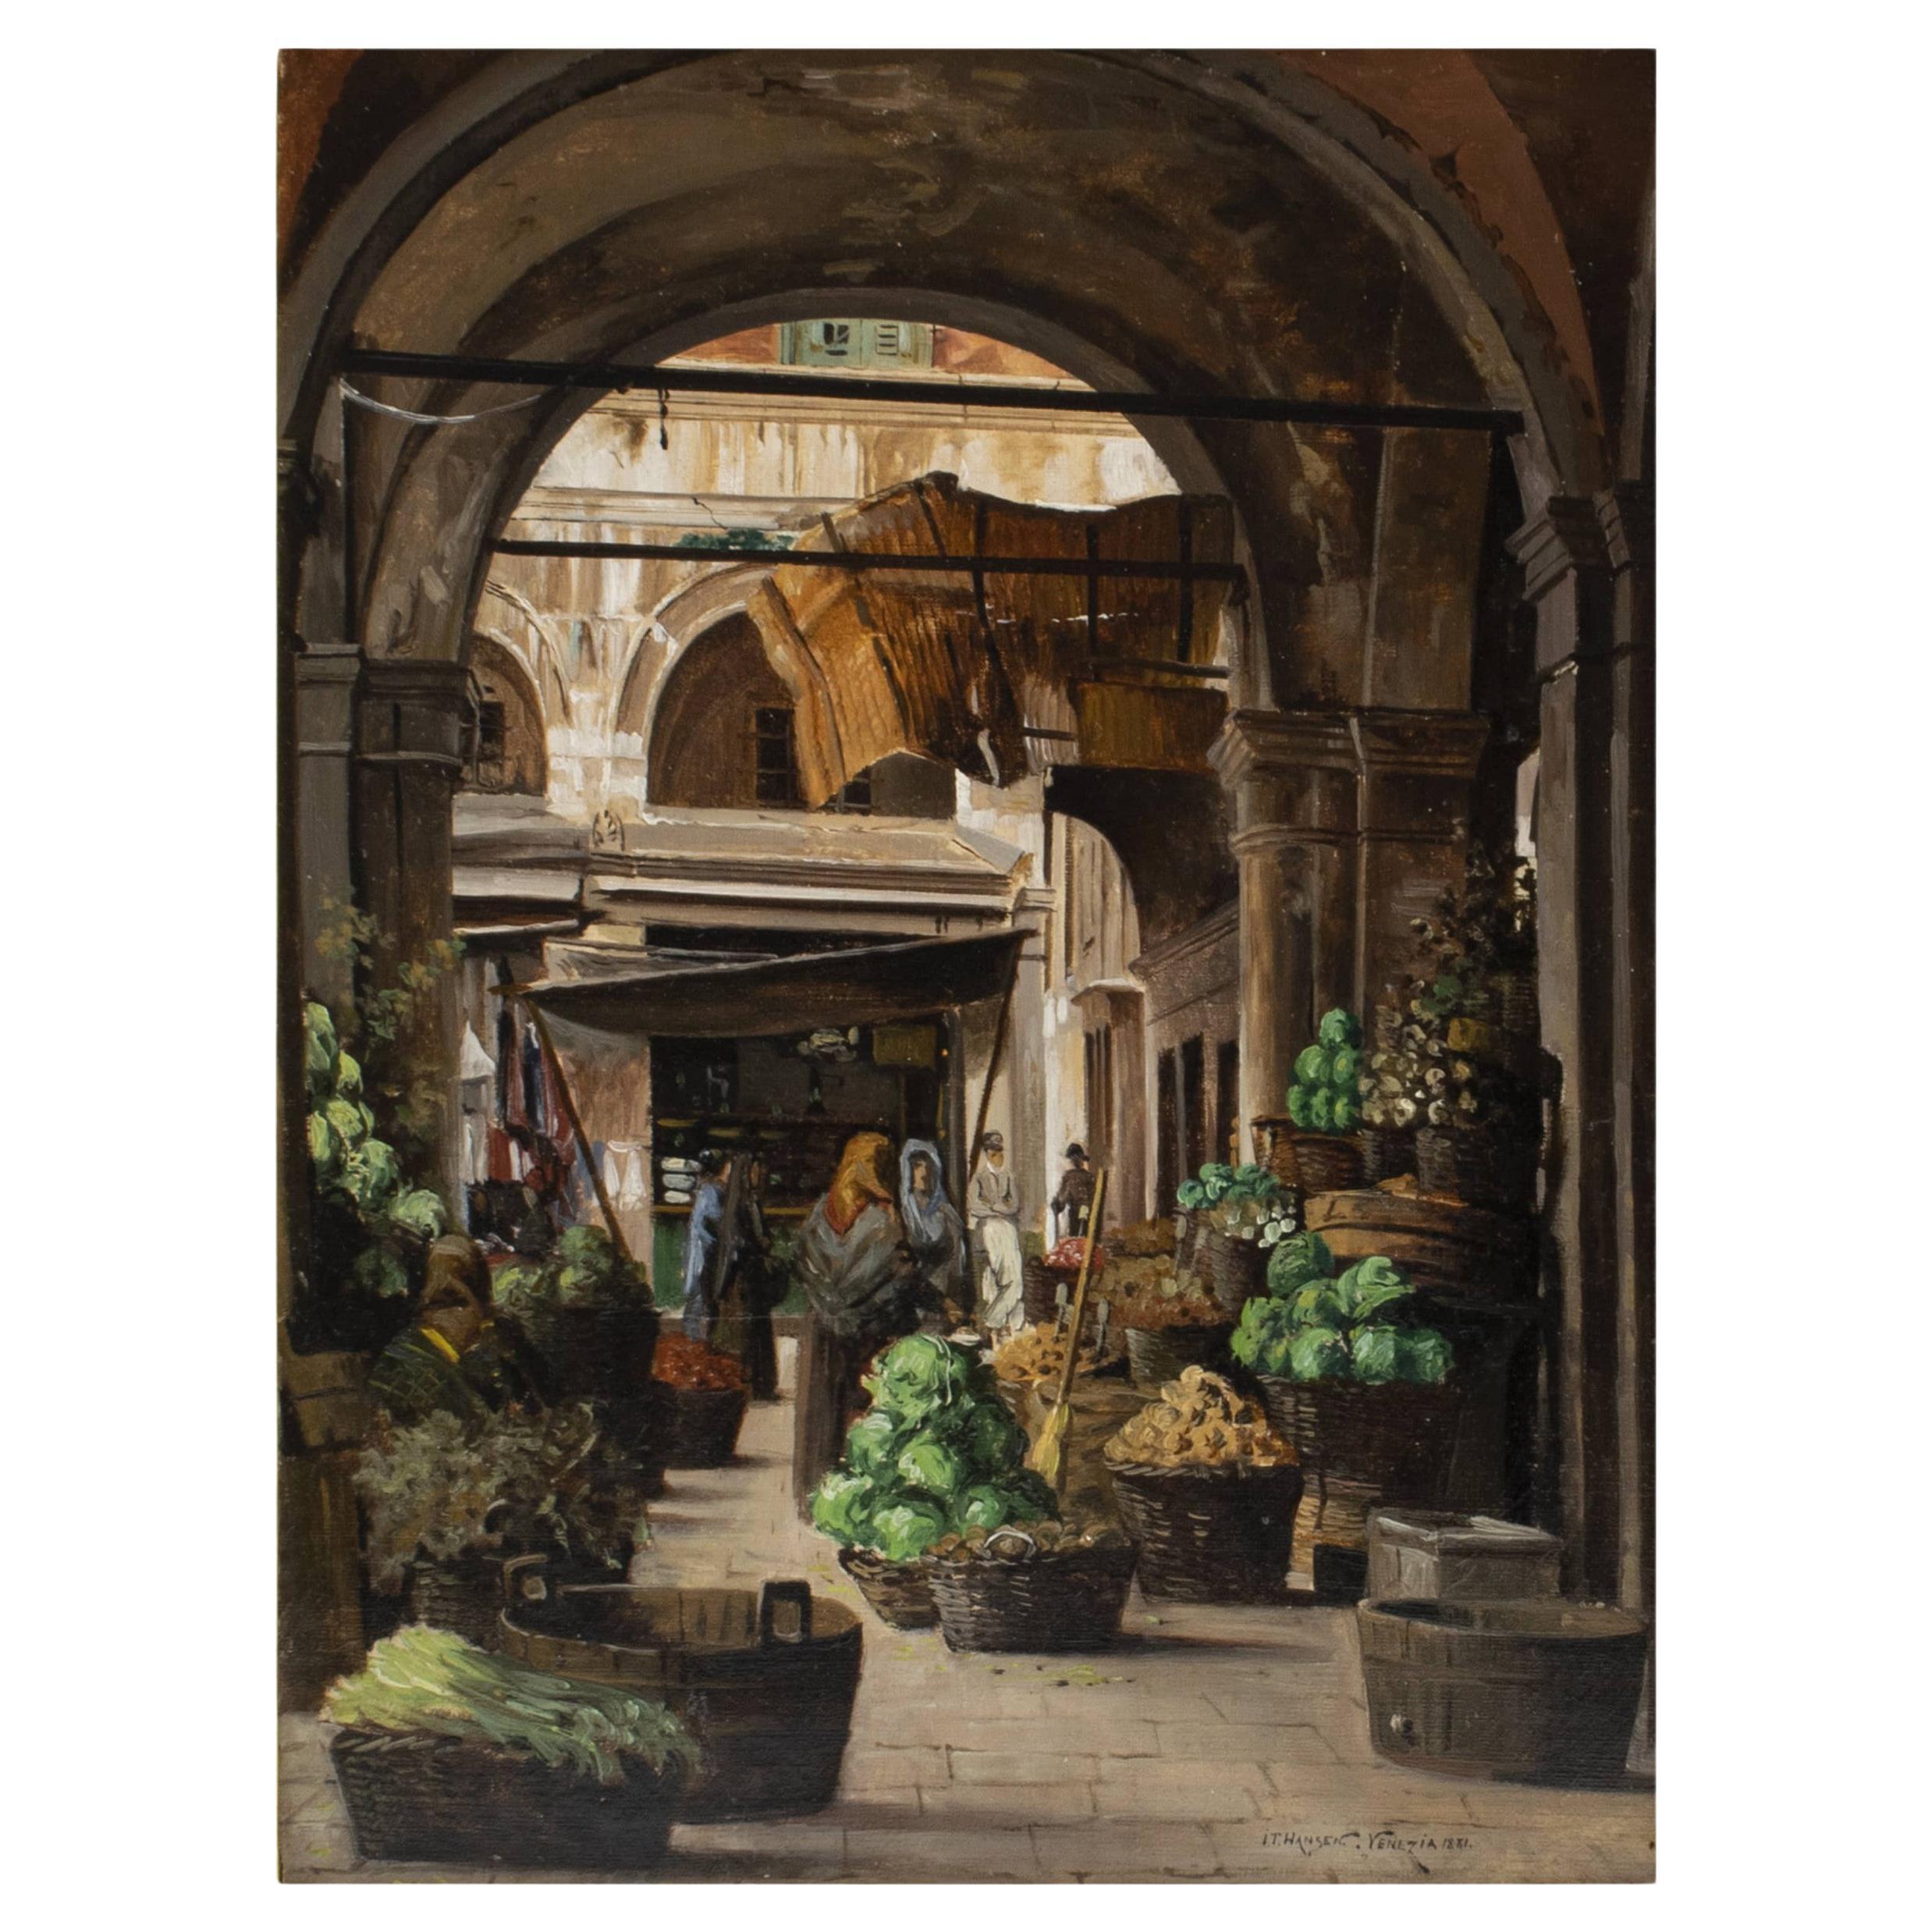 I.T. Hansen, Market Scene From "Piazza Delle Arba", VENICE